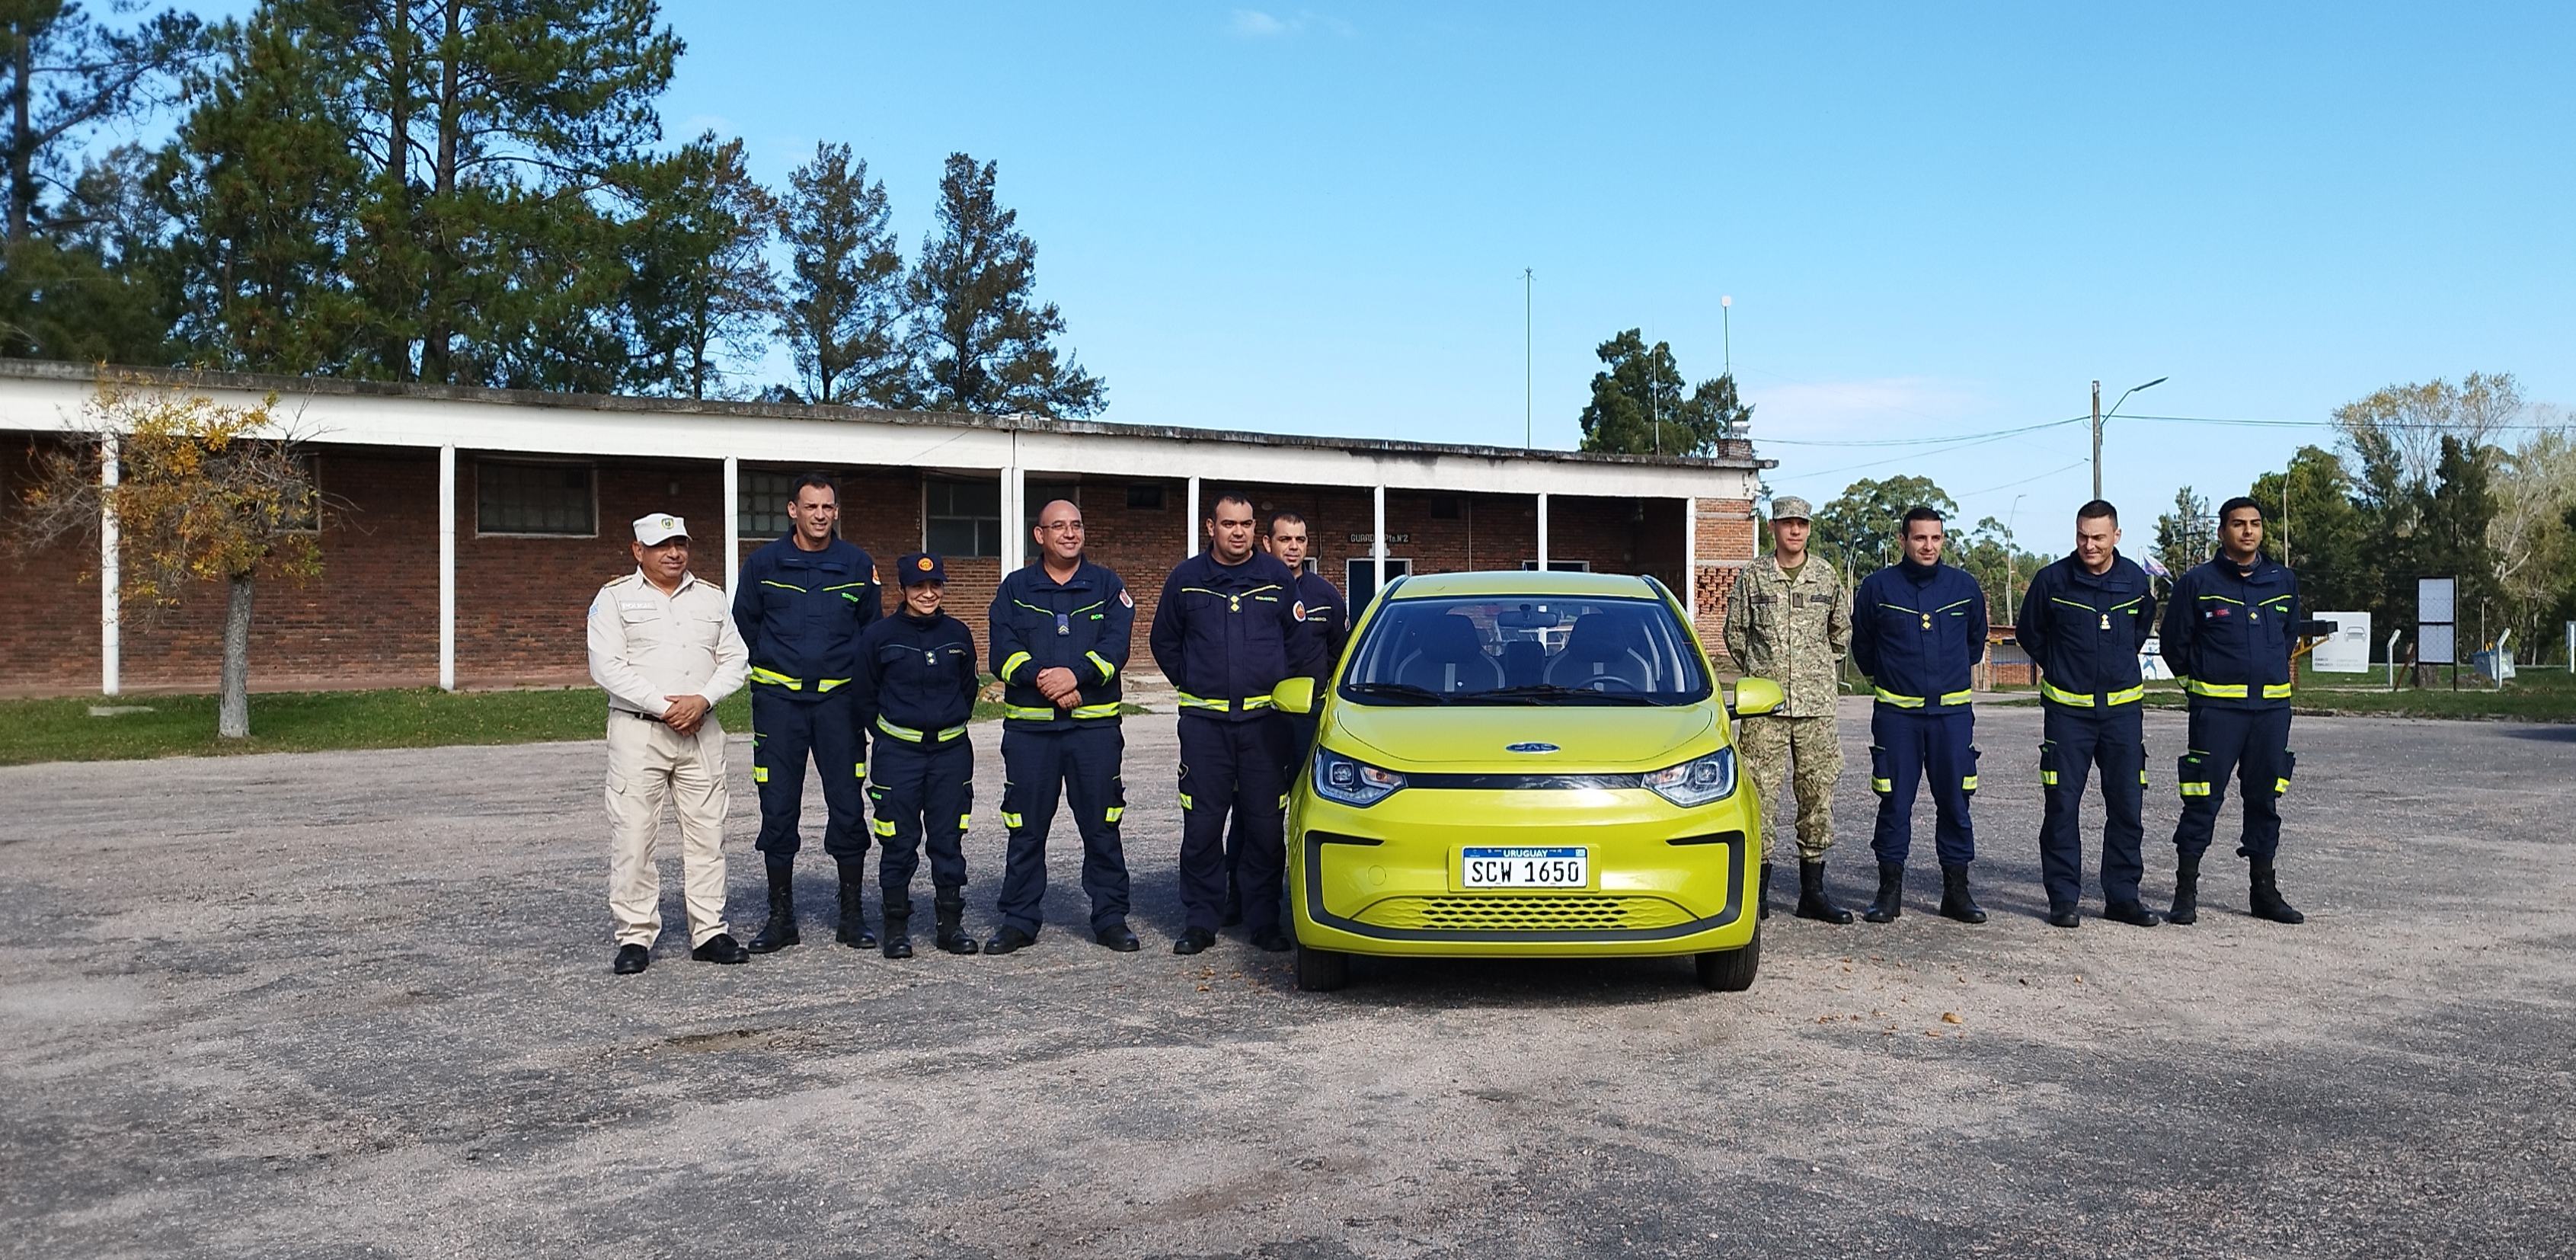 IMG_20230511_132528-YTWhpSYX.jpg - El pasado jueves 11 de mayo culminó la &#034;Capacitación para bomberos sobre manejo de incidentes relacionados con la movilidad eléctrica&#034; en donde se capacitaron a 25 bomberos en la Base Aérea de Santa Bernardina del departamento de Durazno. Esta capacitación es la continuación del primer curso regional que organizó la plataforma MOVE del Programa de la Naciones Unidas para el Medio Ambiente a finales de 2022 en Paraguay, donde participaron y se formaron dos bomberos instructores de Uruguay.